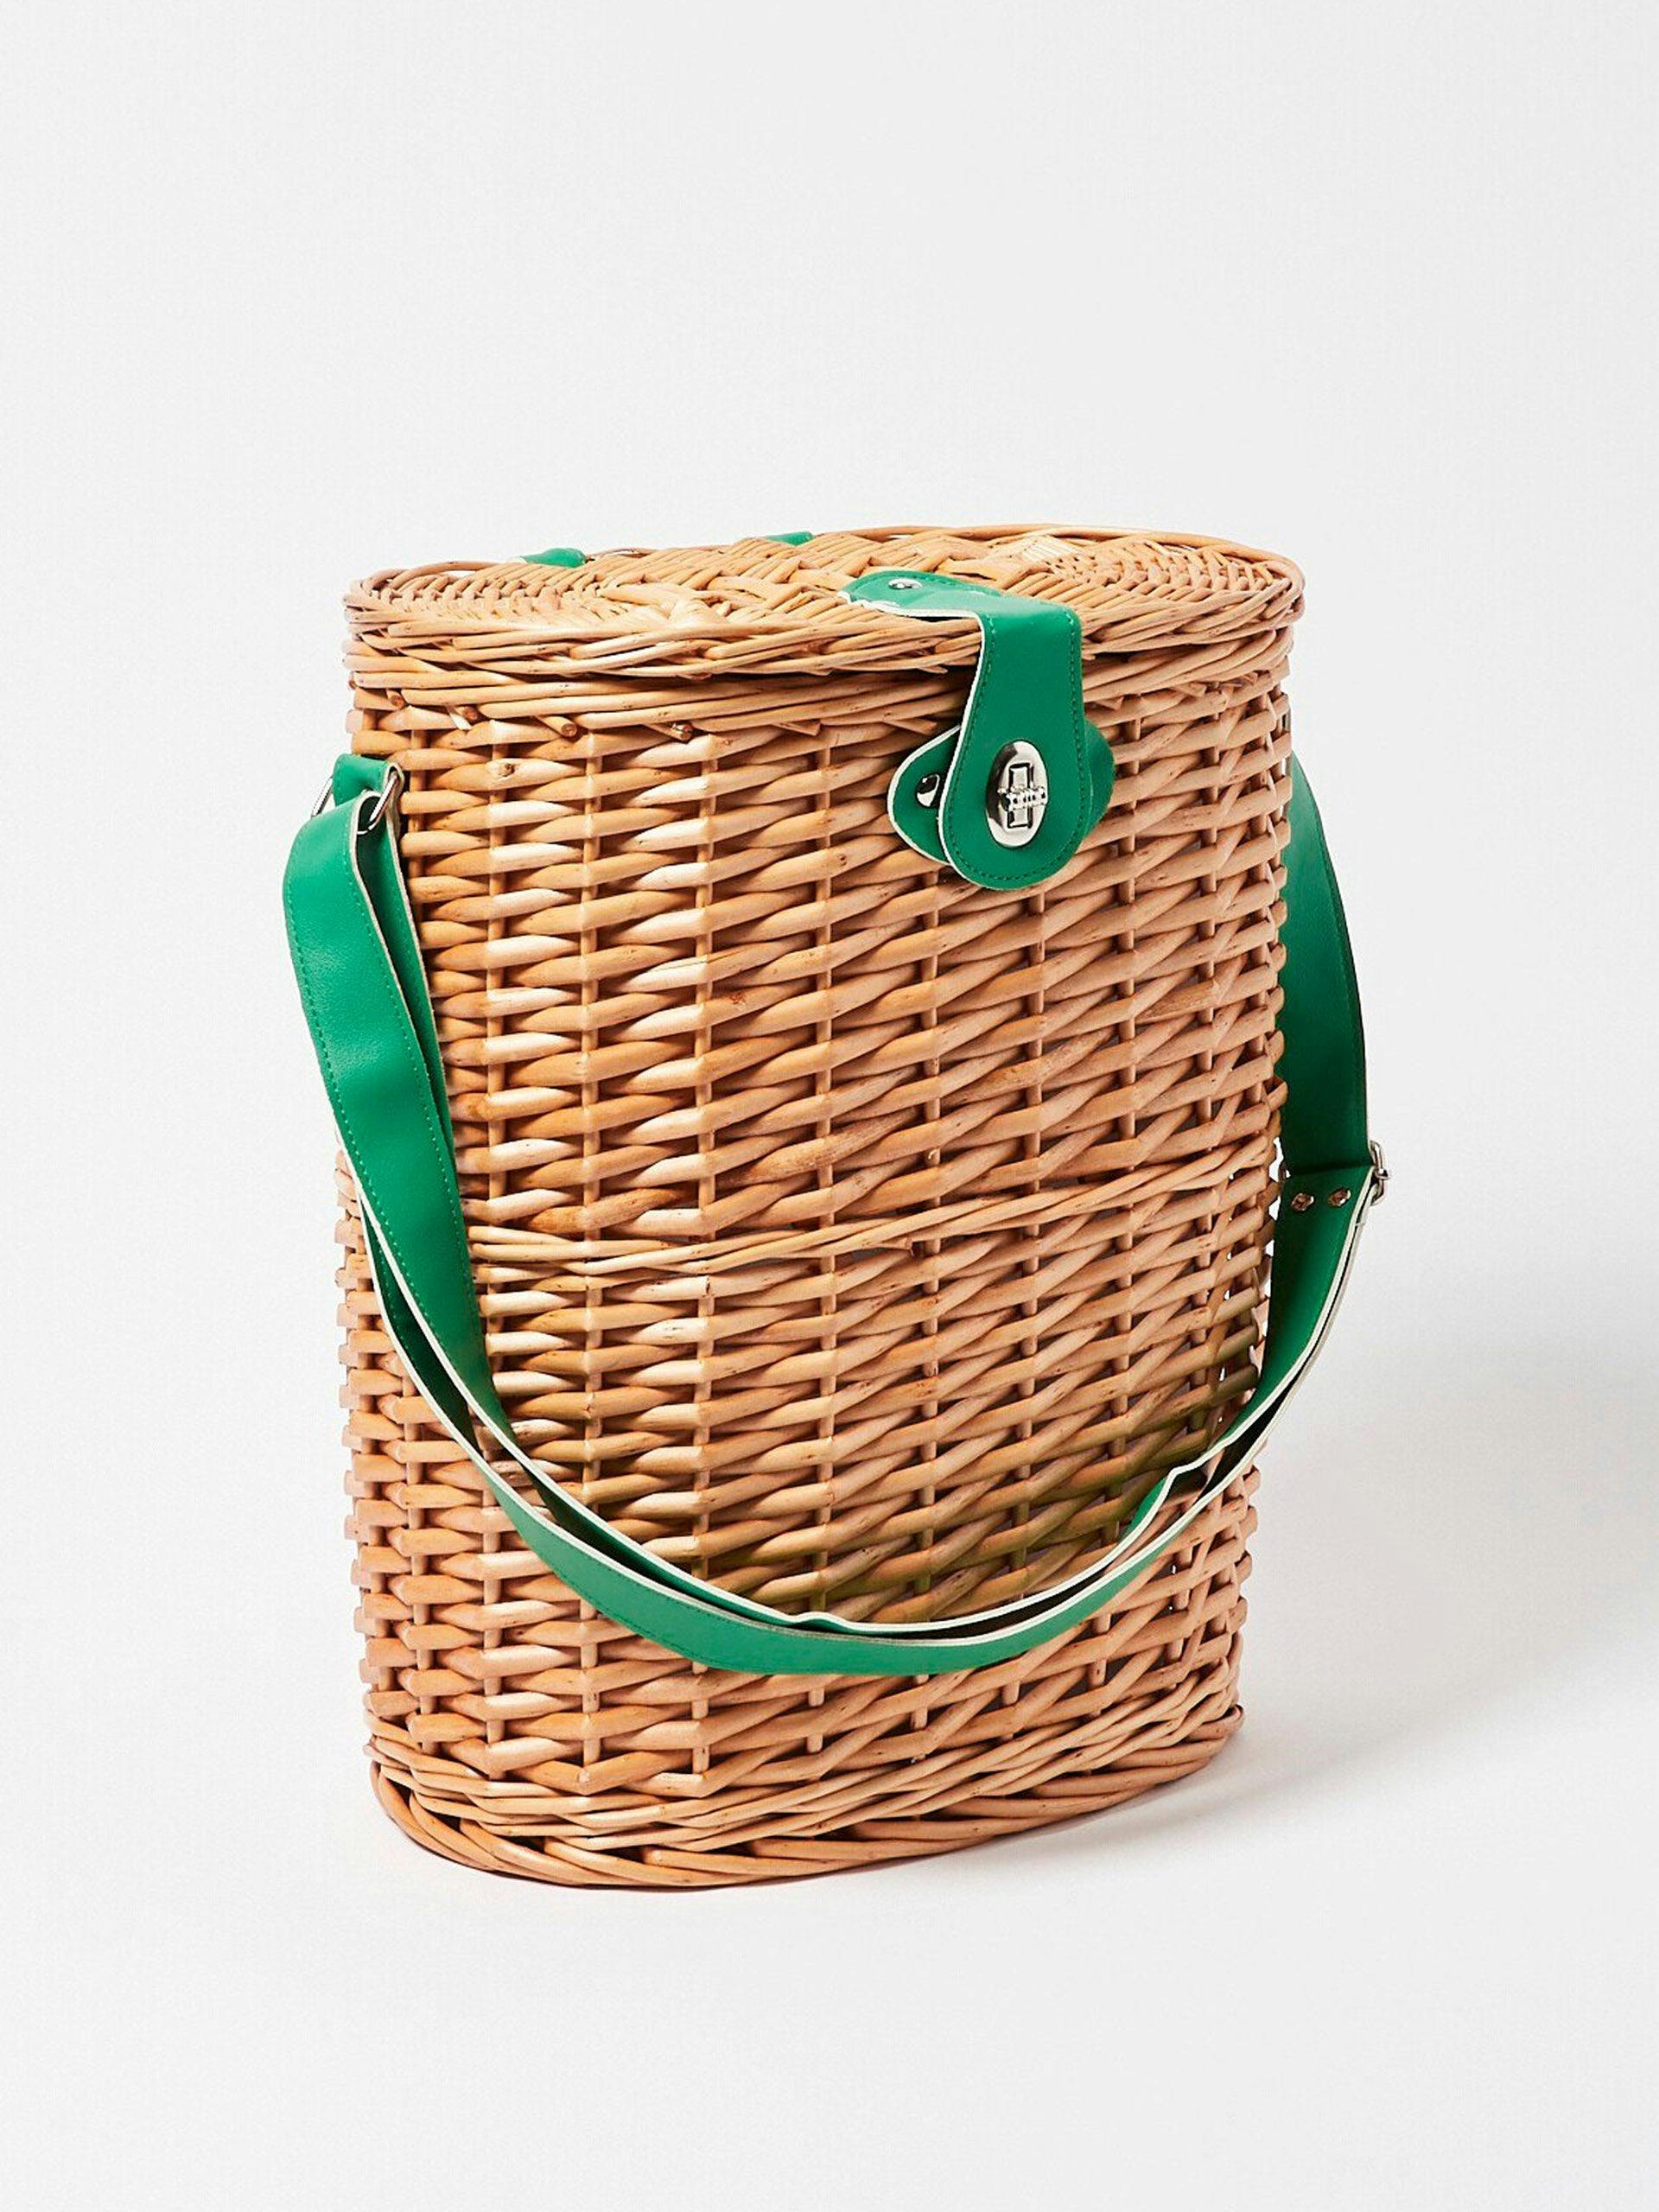 Two-bottle wicker picnic basket